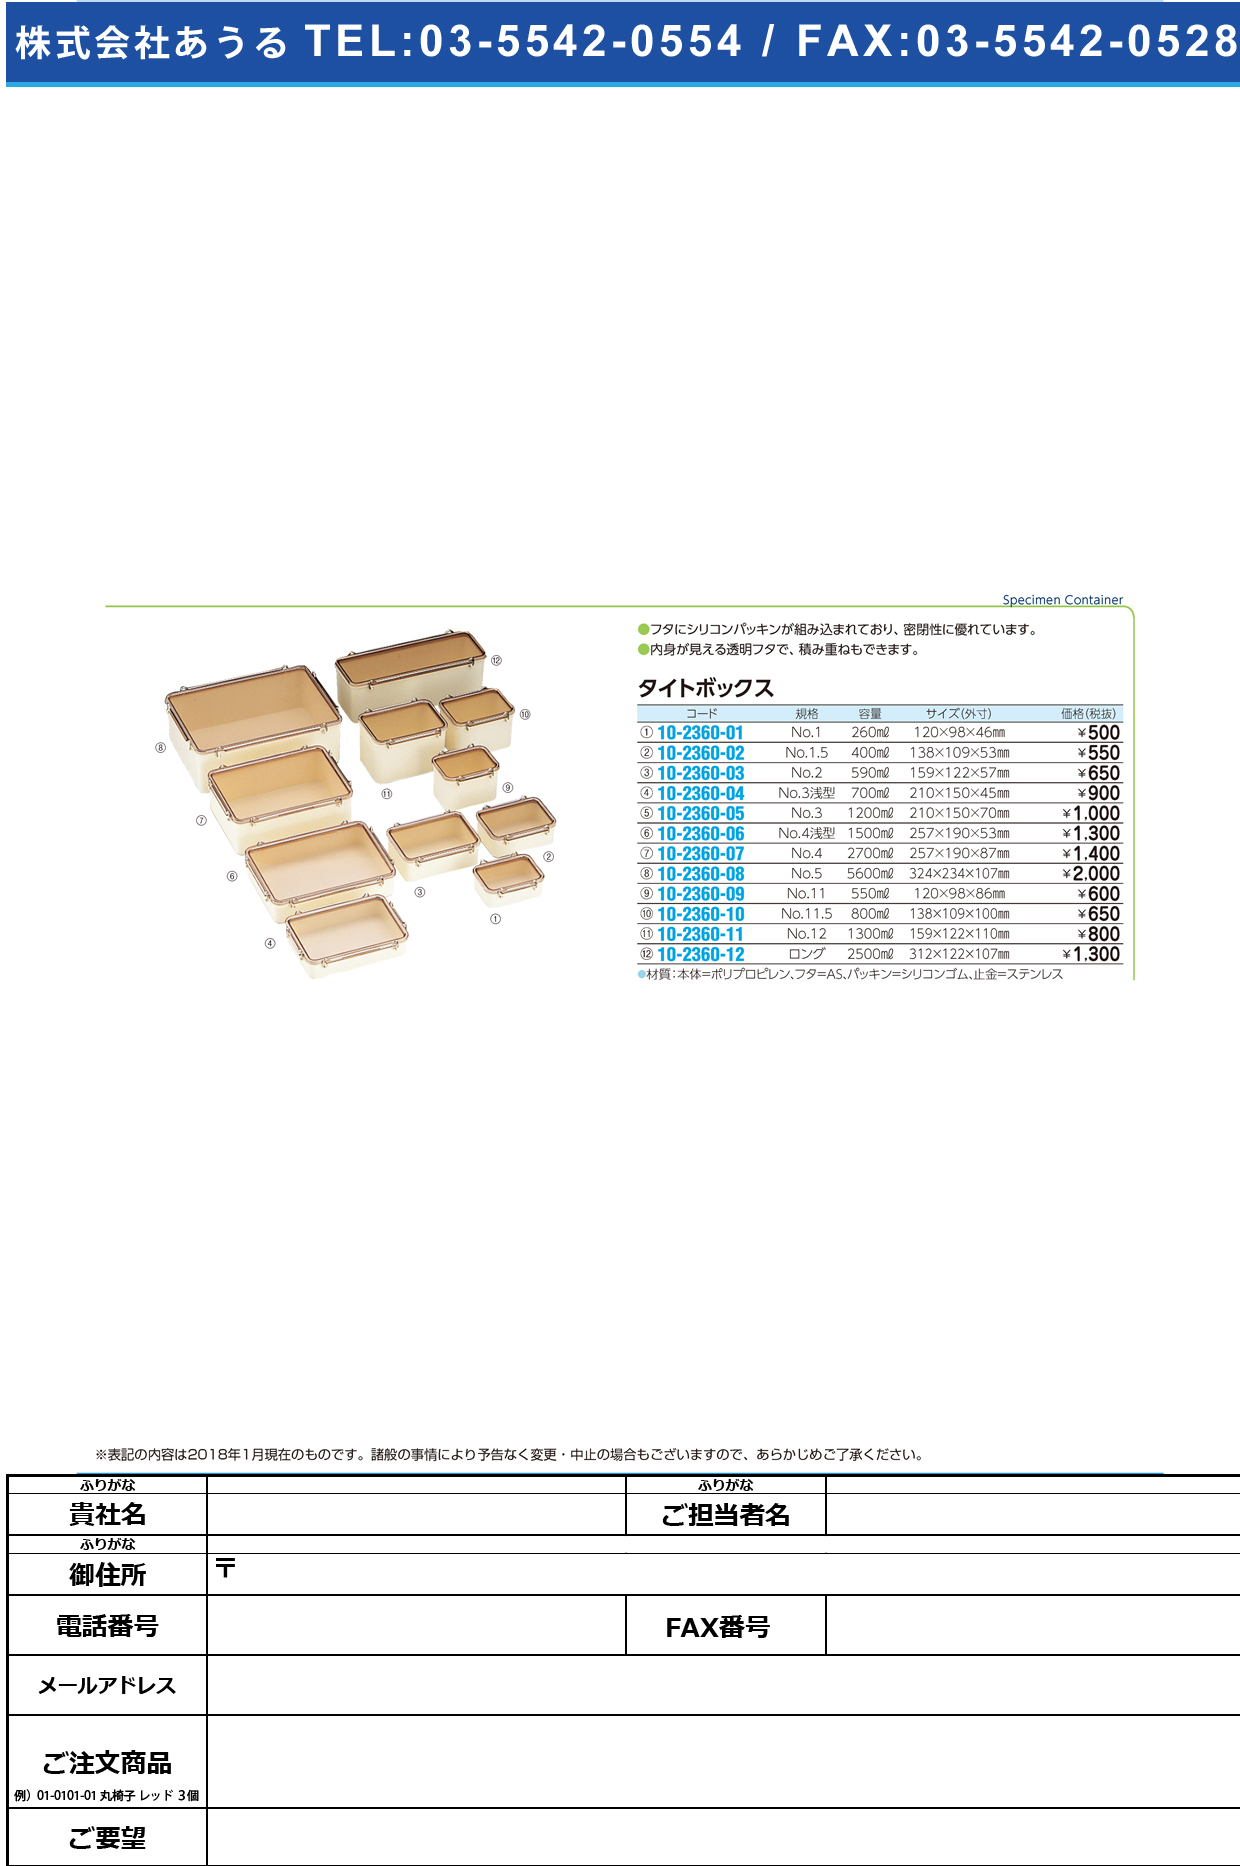 (10-2360-12)タイトボックス（簡易型デシケーター） ﾛﾝｸﾞ(2500ML) ﾀｲﾄﾎﾞｯｸｽ【1個単位】【2019年カタログ商品】